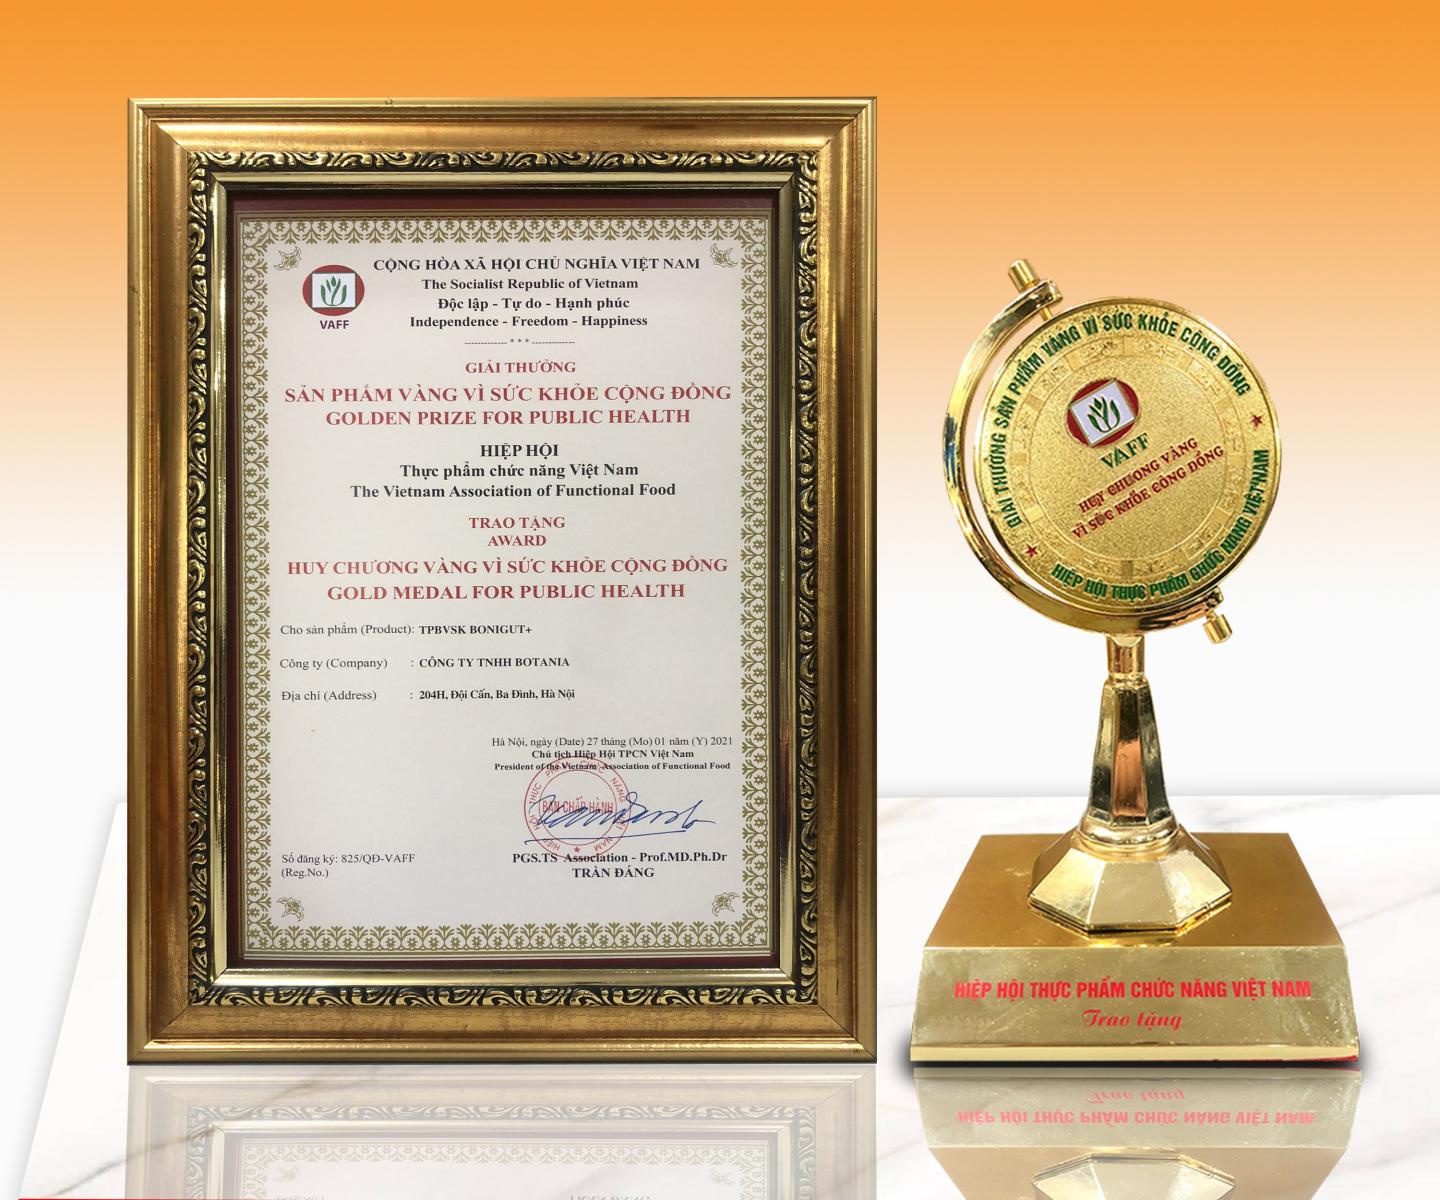 BoniGut+ nhận được giải thưởng “Sản phẩm vàng vì sức khỏe cộng đồng”.